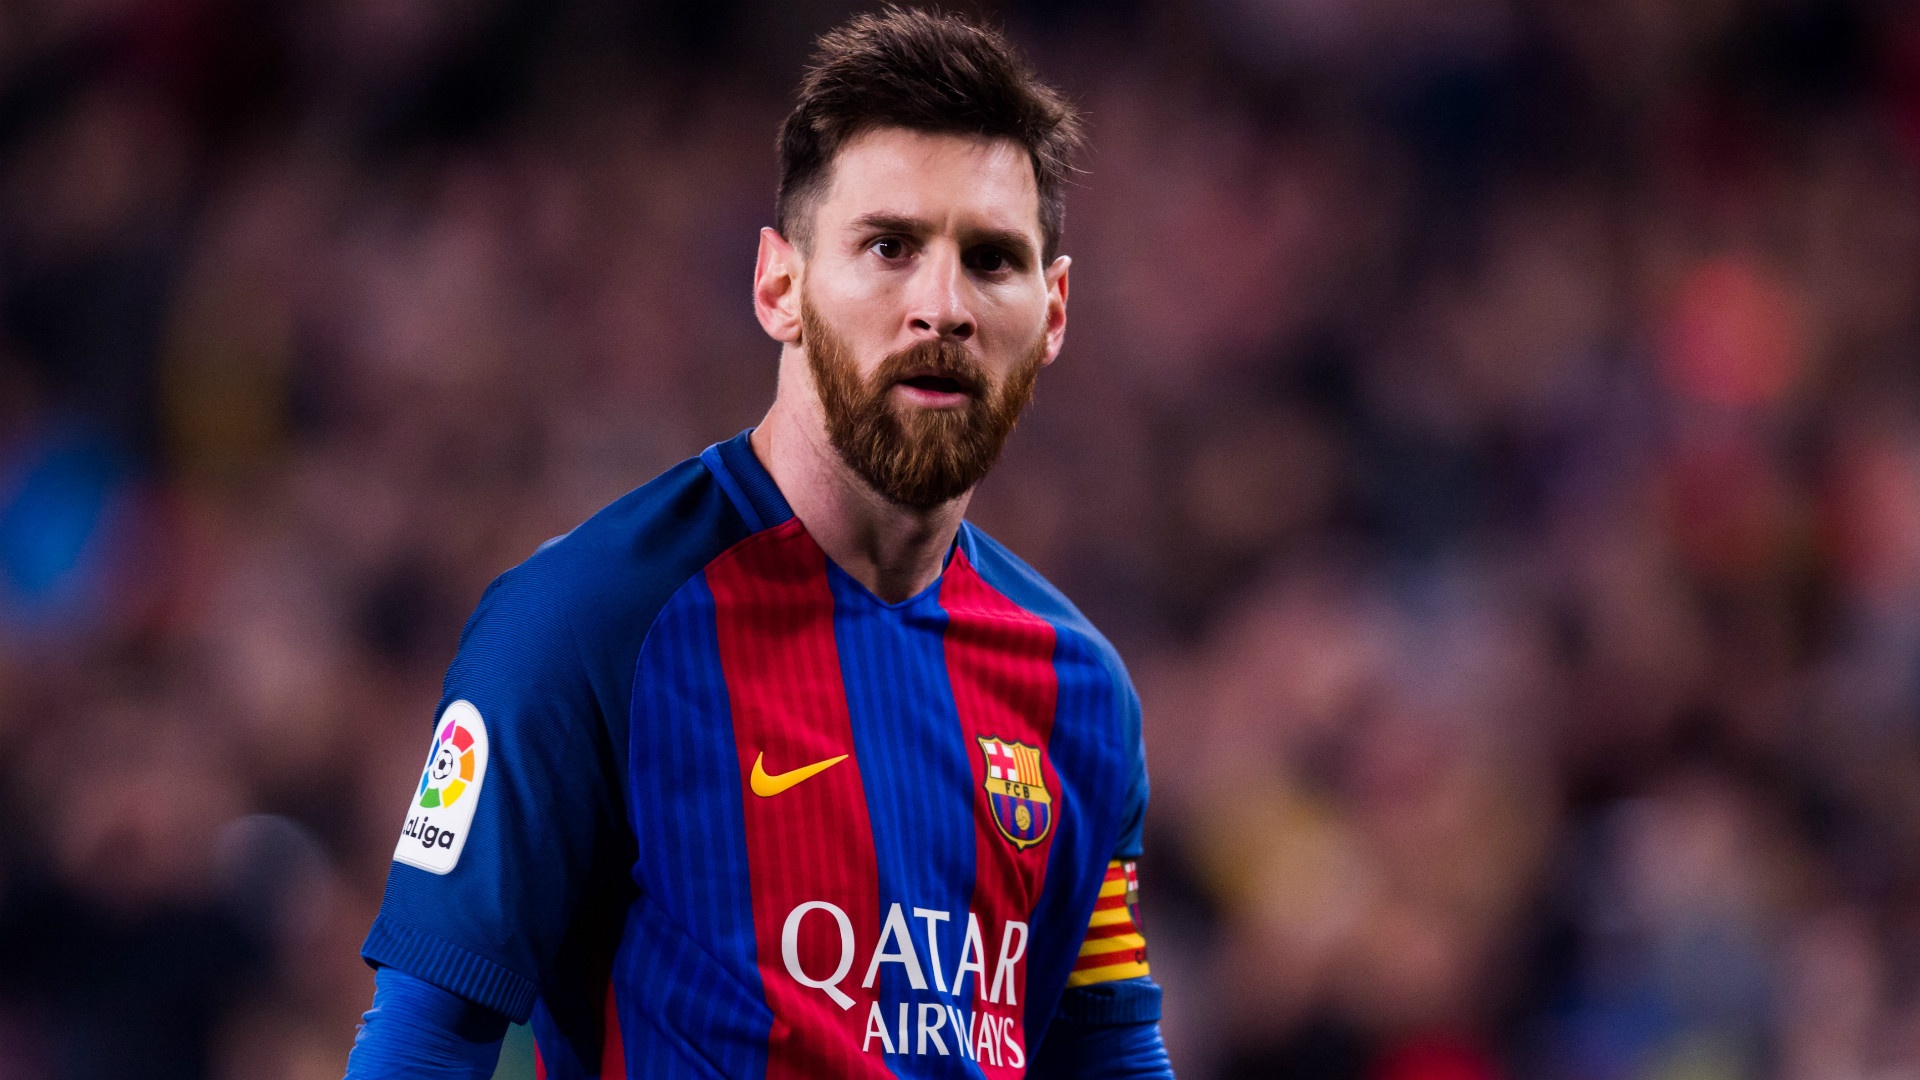 Saiba quem é o jogador de futebol mais rico do mundo — e não é o Messi